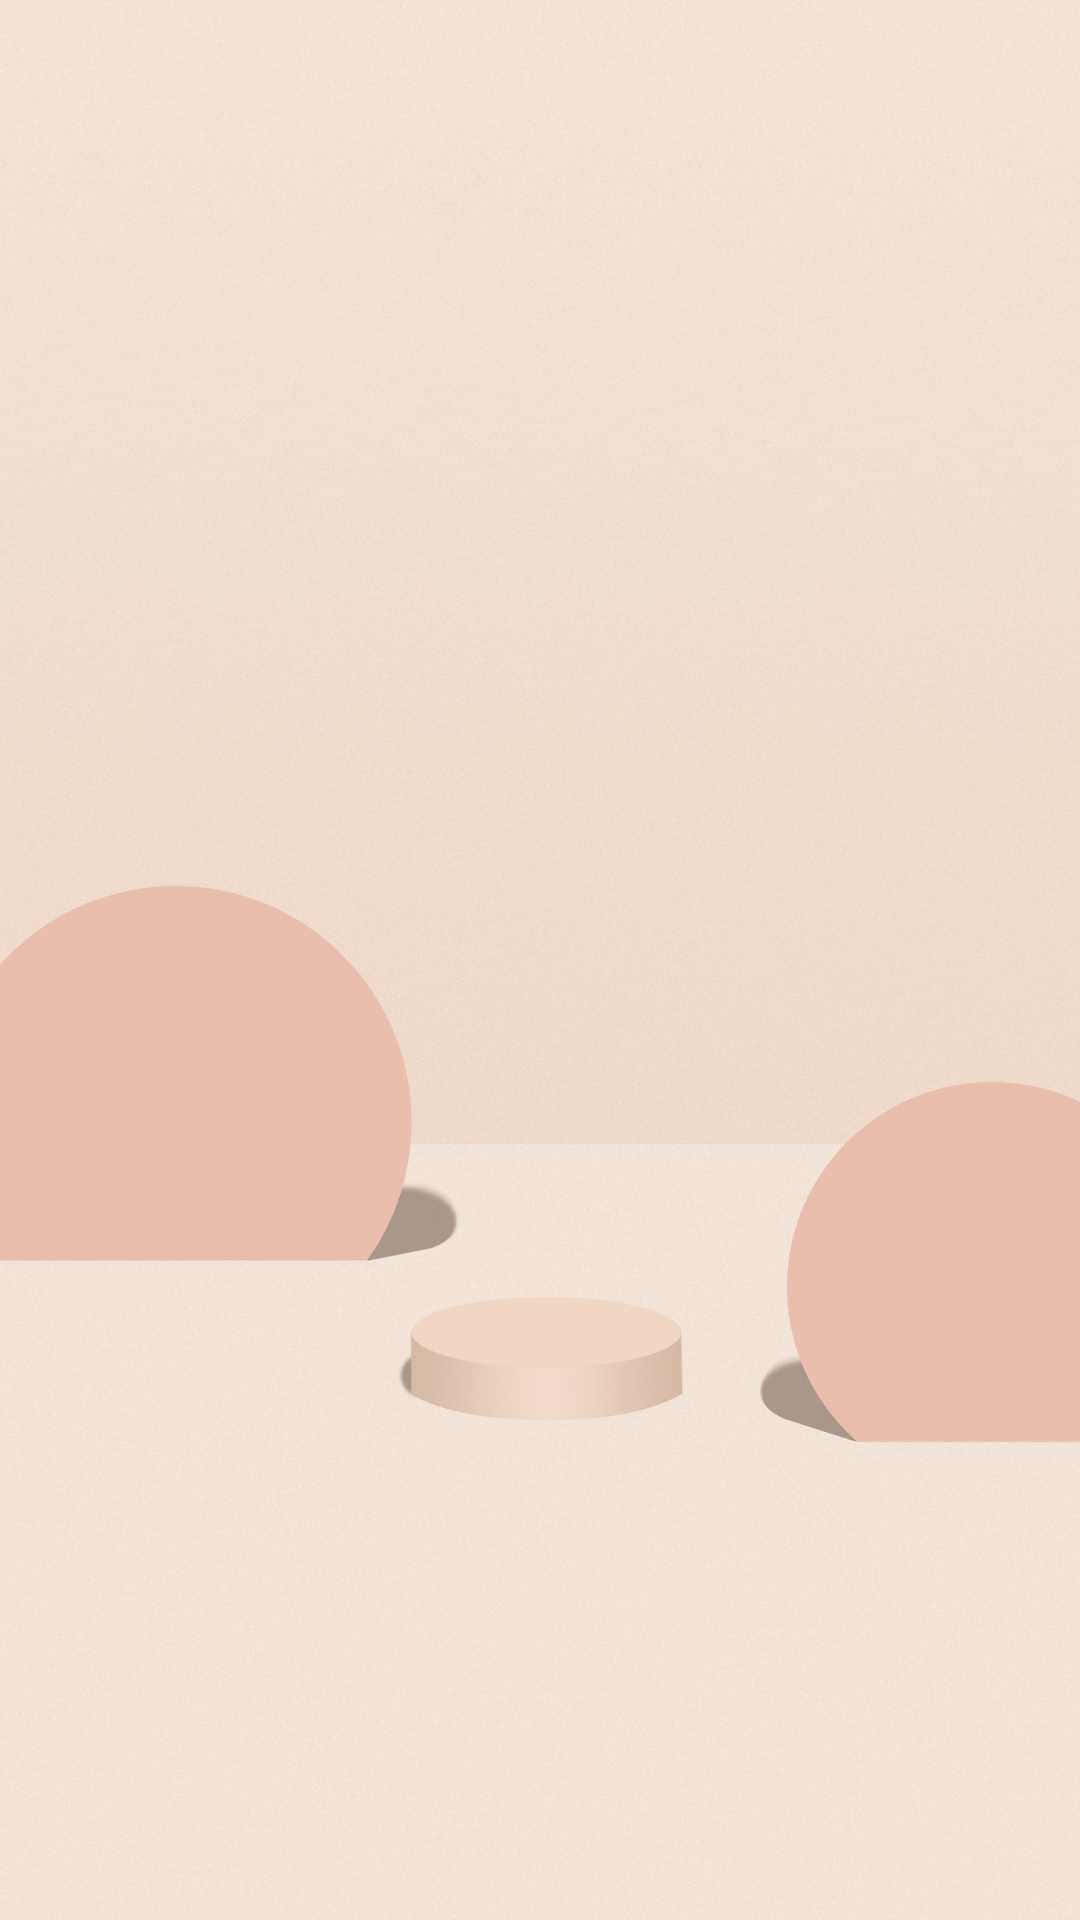 Pink Round Podium Product Background For Photoshoot